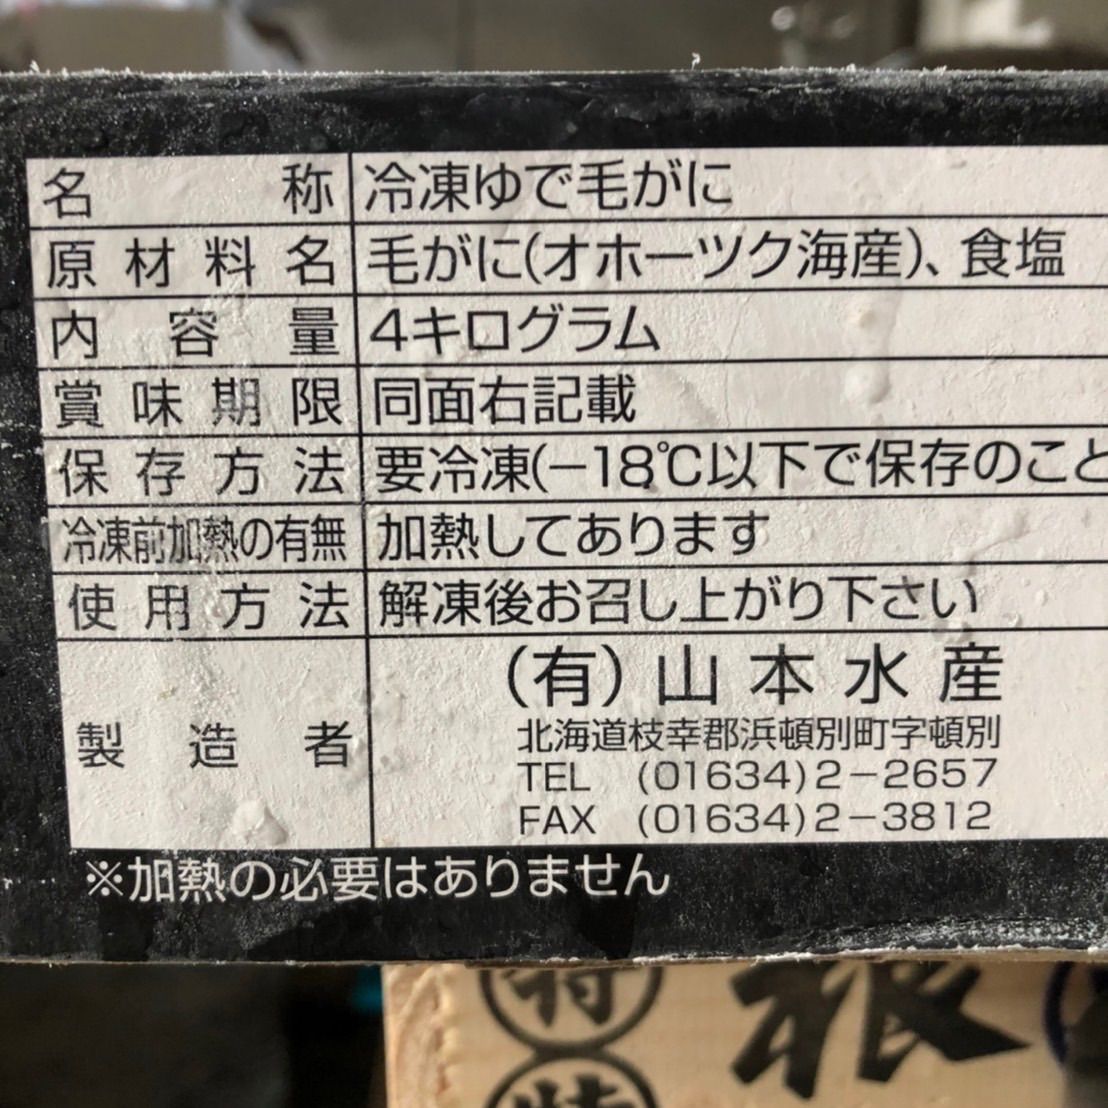 最高級3特北海道オホーツク産冷凍毛蟹570g3尾21400円-4